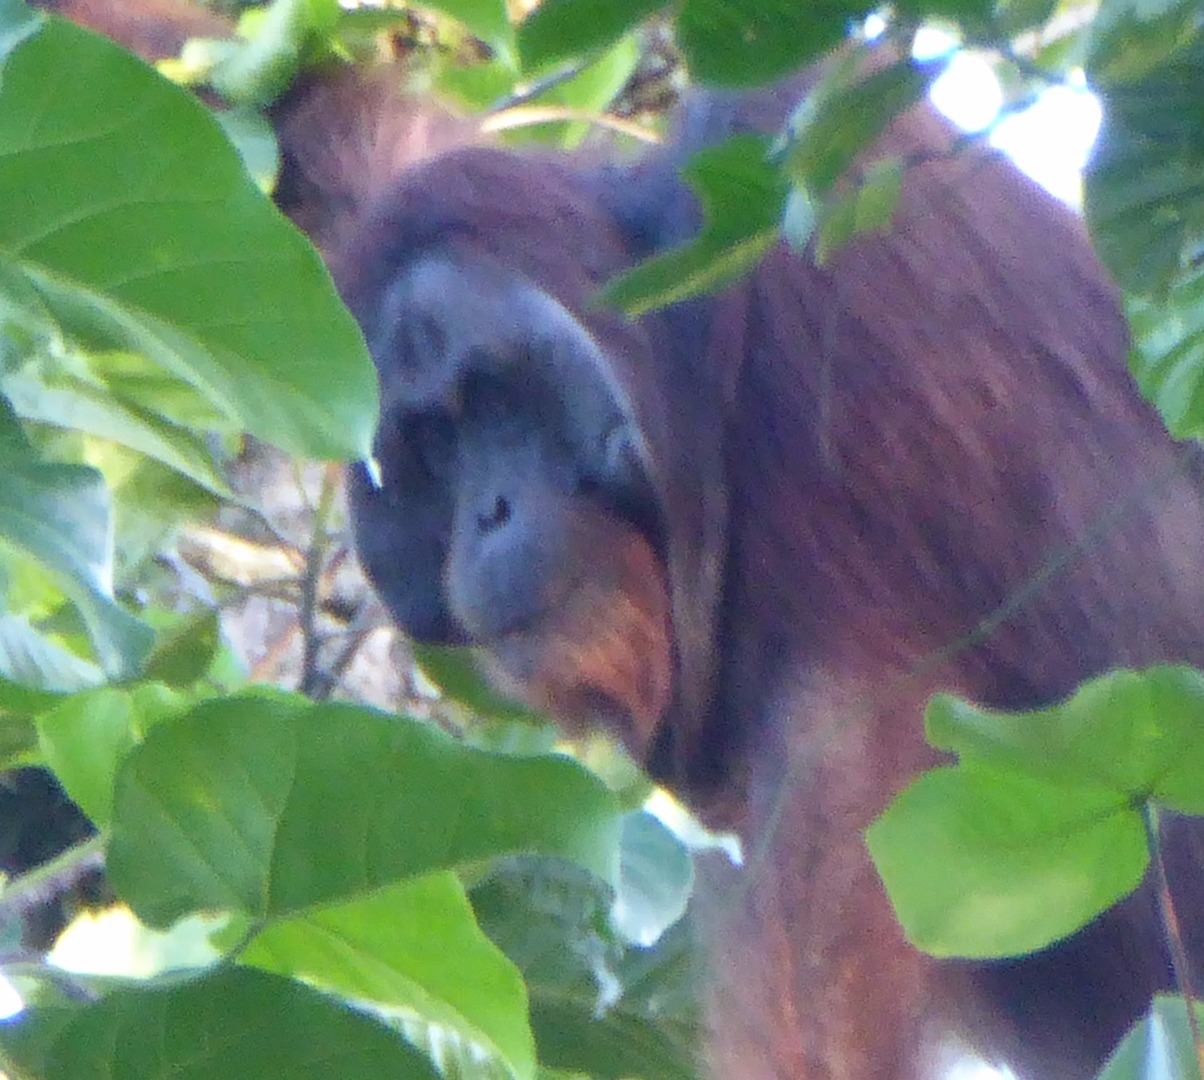 Adventure Alternative Borneo Sabah Jungle Orangutan